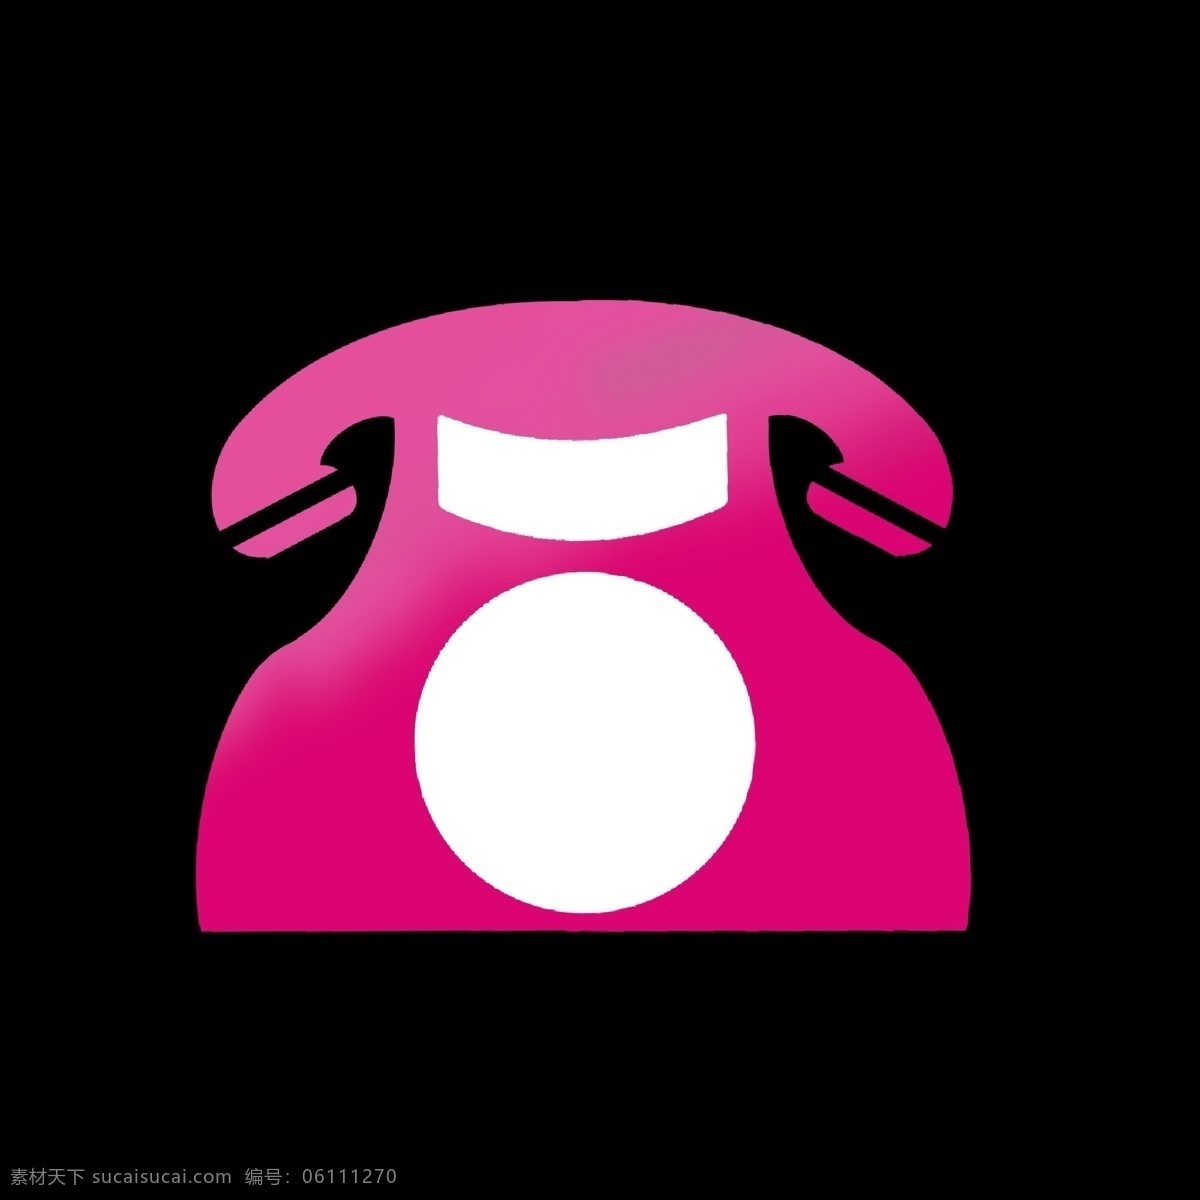 红色 系列 简历 图标 暖色 渐变 联系方式 电话 沟通 联系人 手机 粉色 名片 简洁 抽象 卡通 名片使用